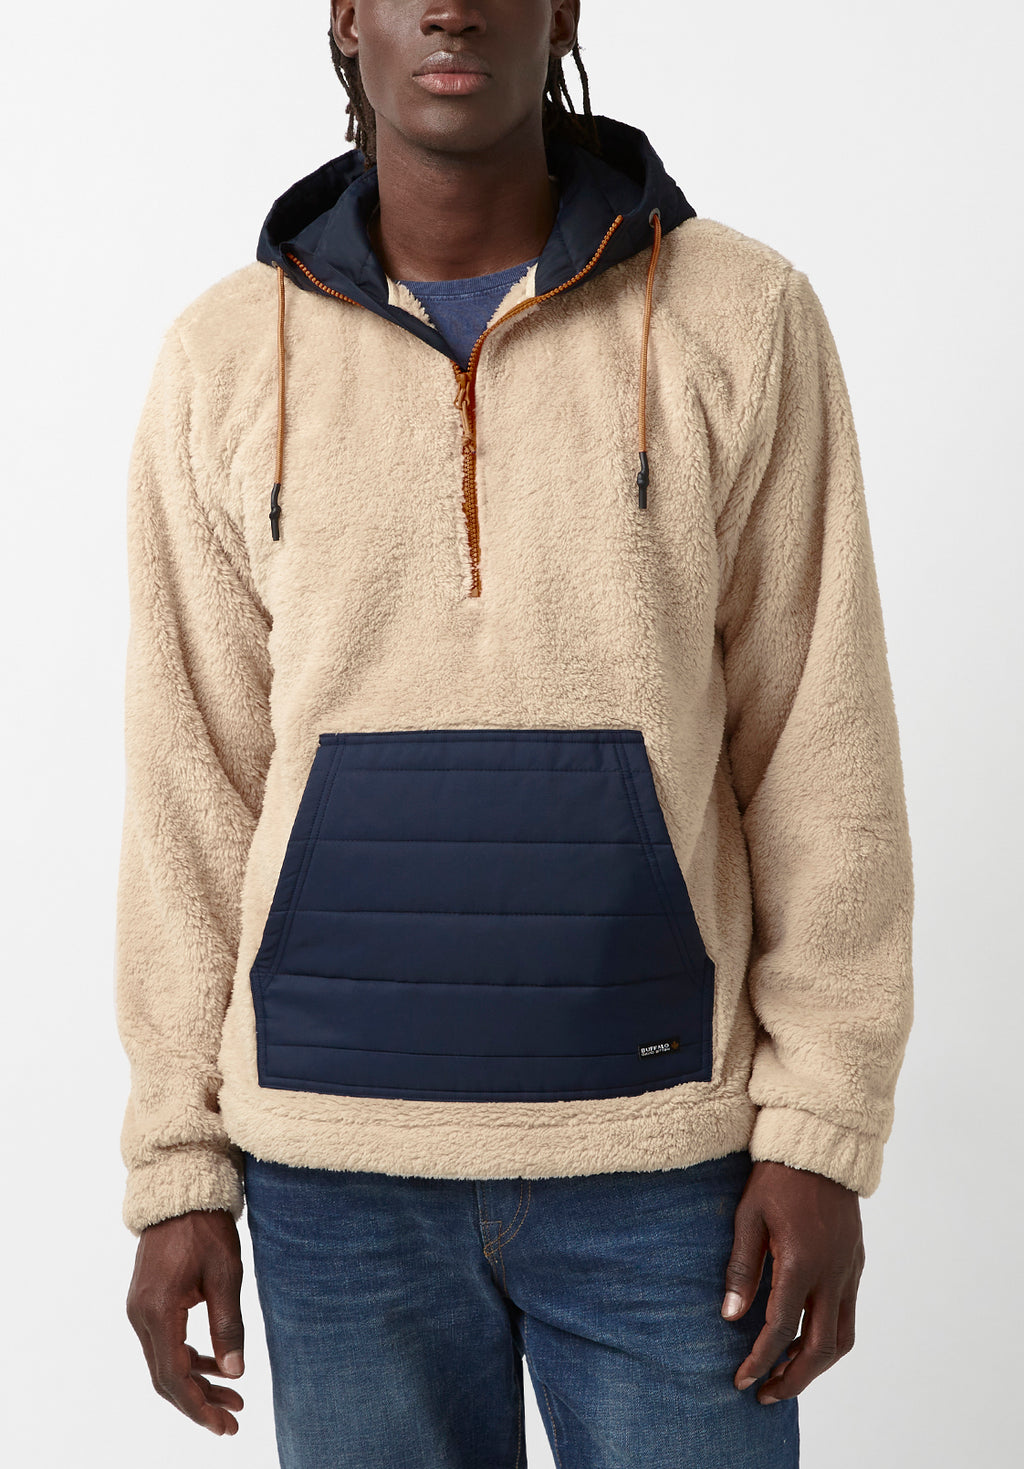 Fibet Men’s Hoodie Sweater Jacket in Beige & Navy Combo - BM24072